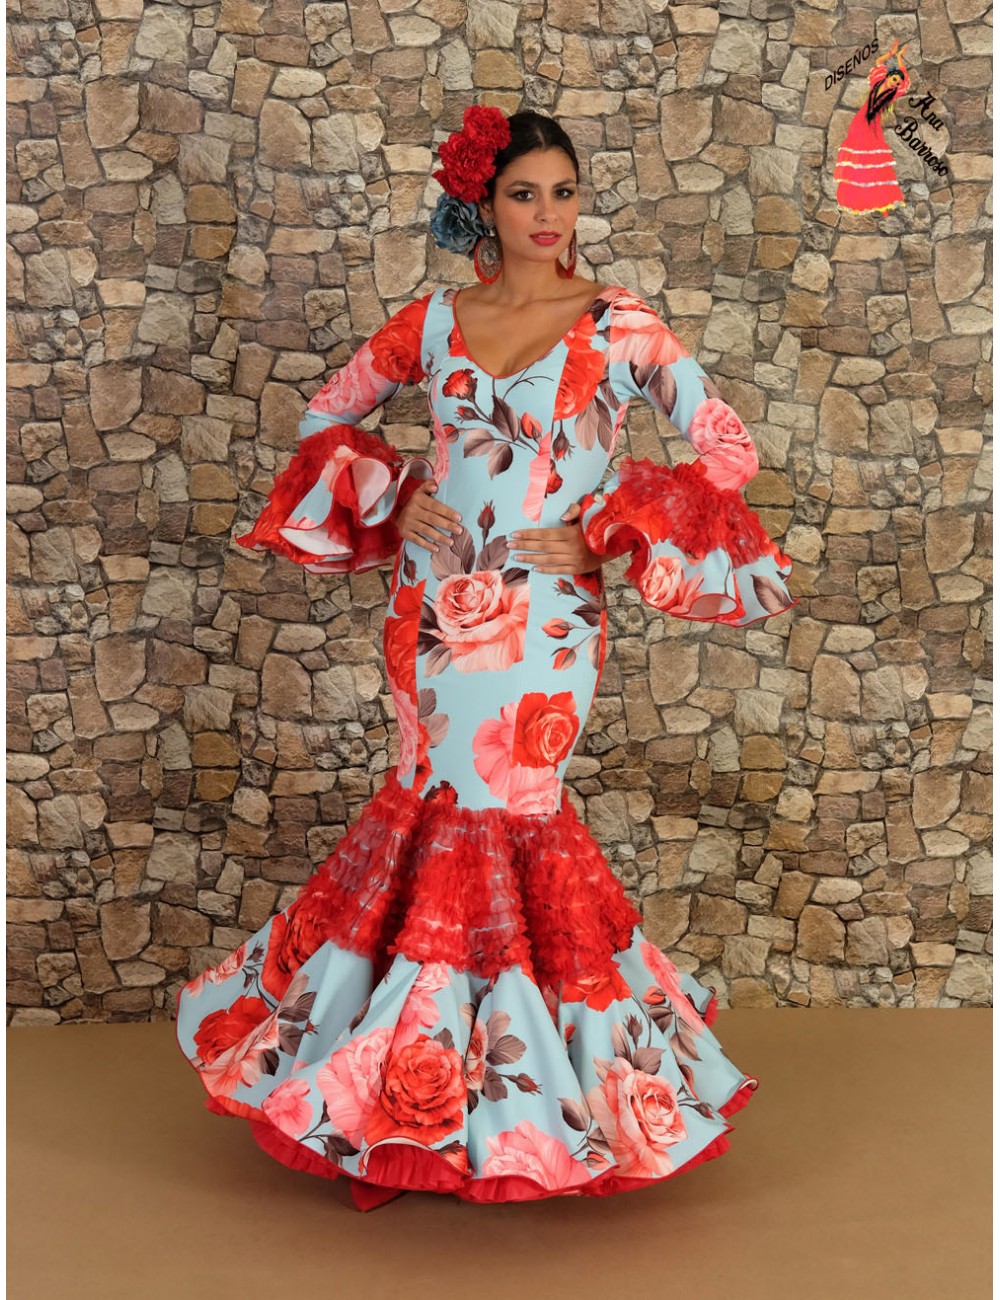 Vestido Flamenca